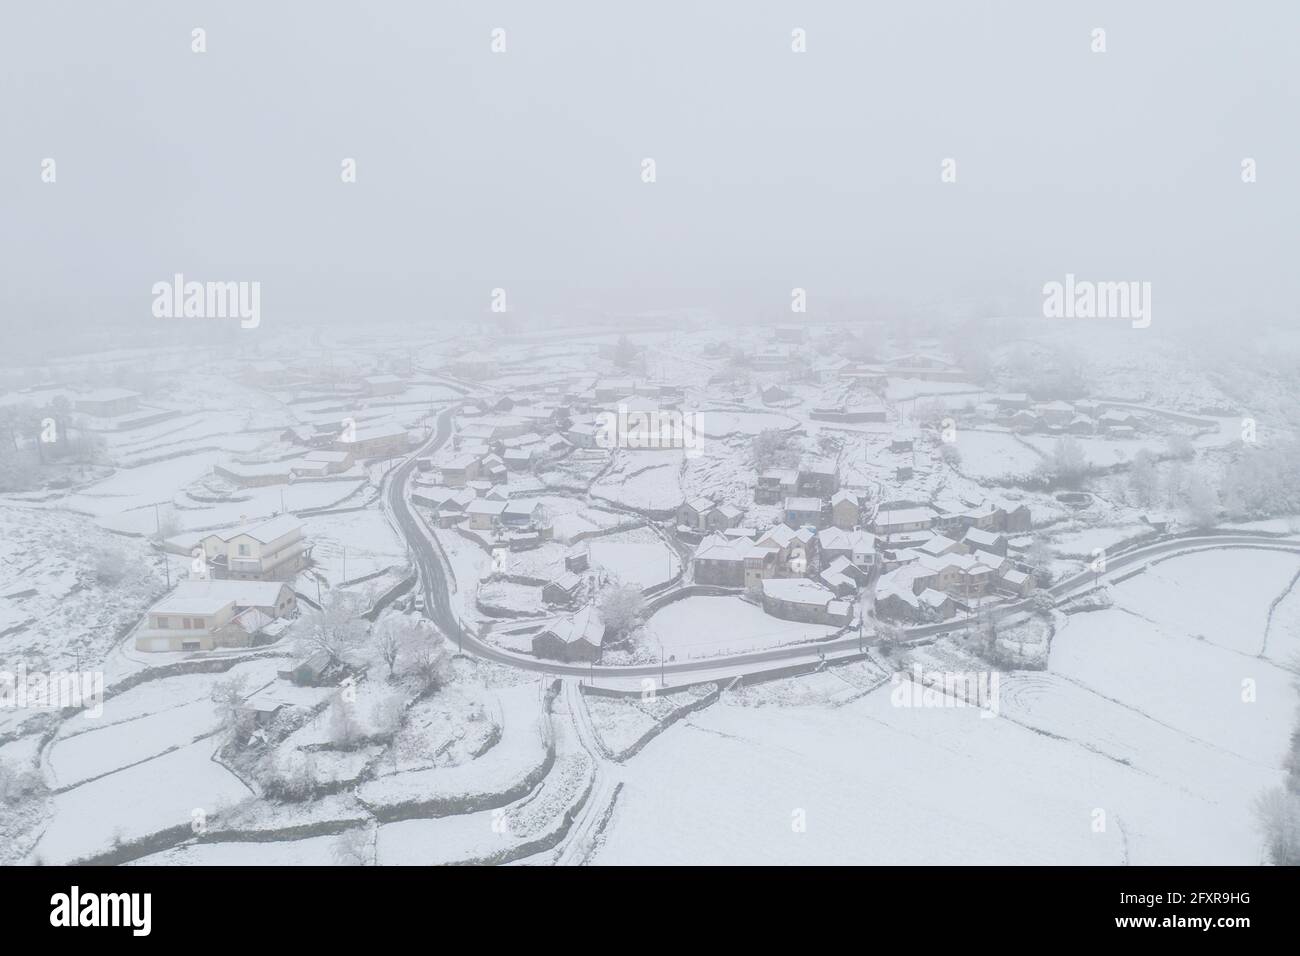 Drone vista aerea di una strada e remoto villaggio coperto di neve a Vila Real, Norte, Portogallo, Europa Foto Stock